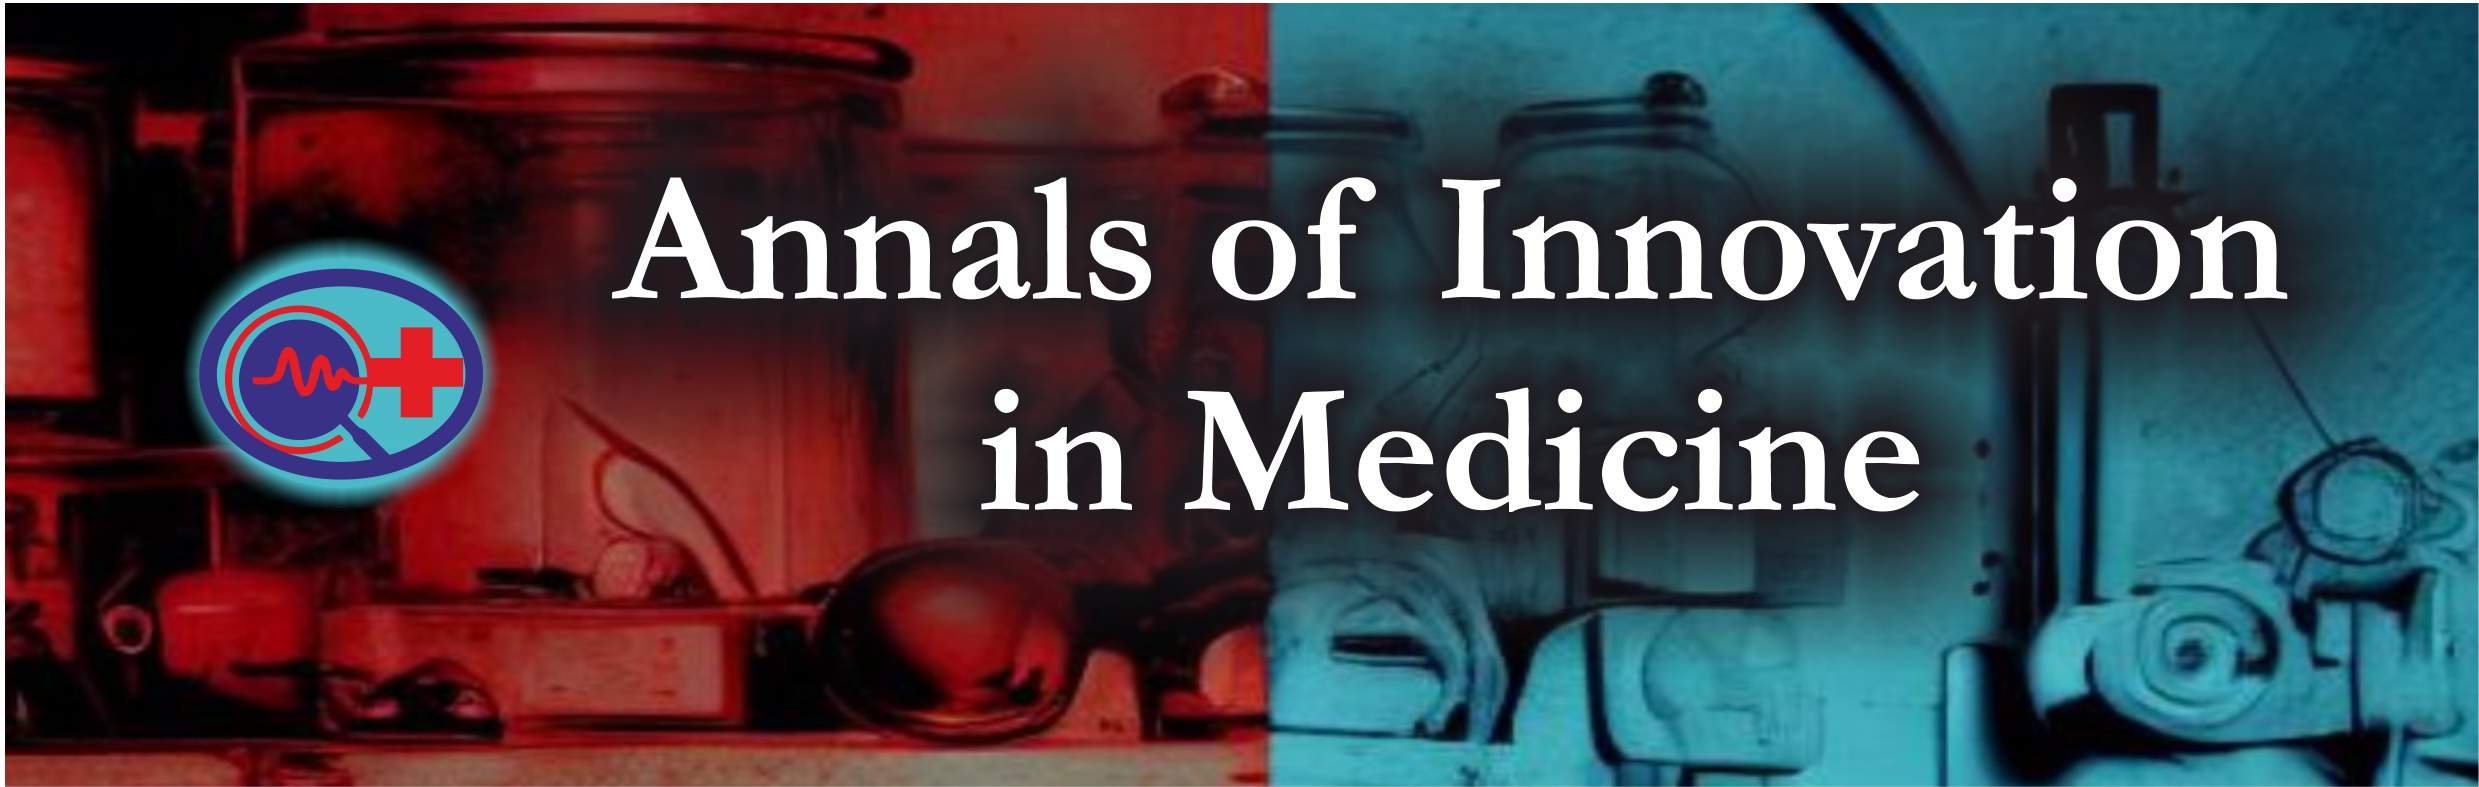 Annals of Innovation in Medicine